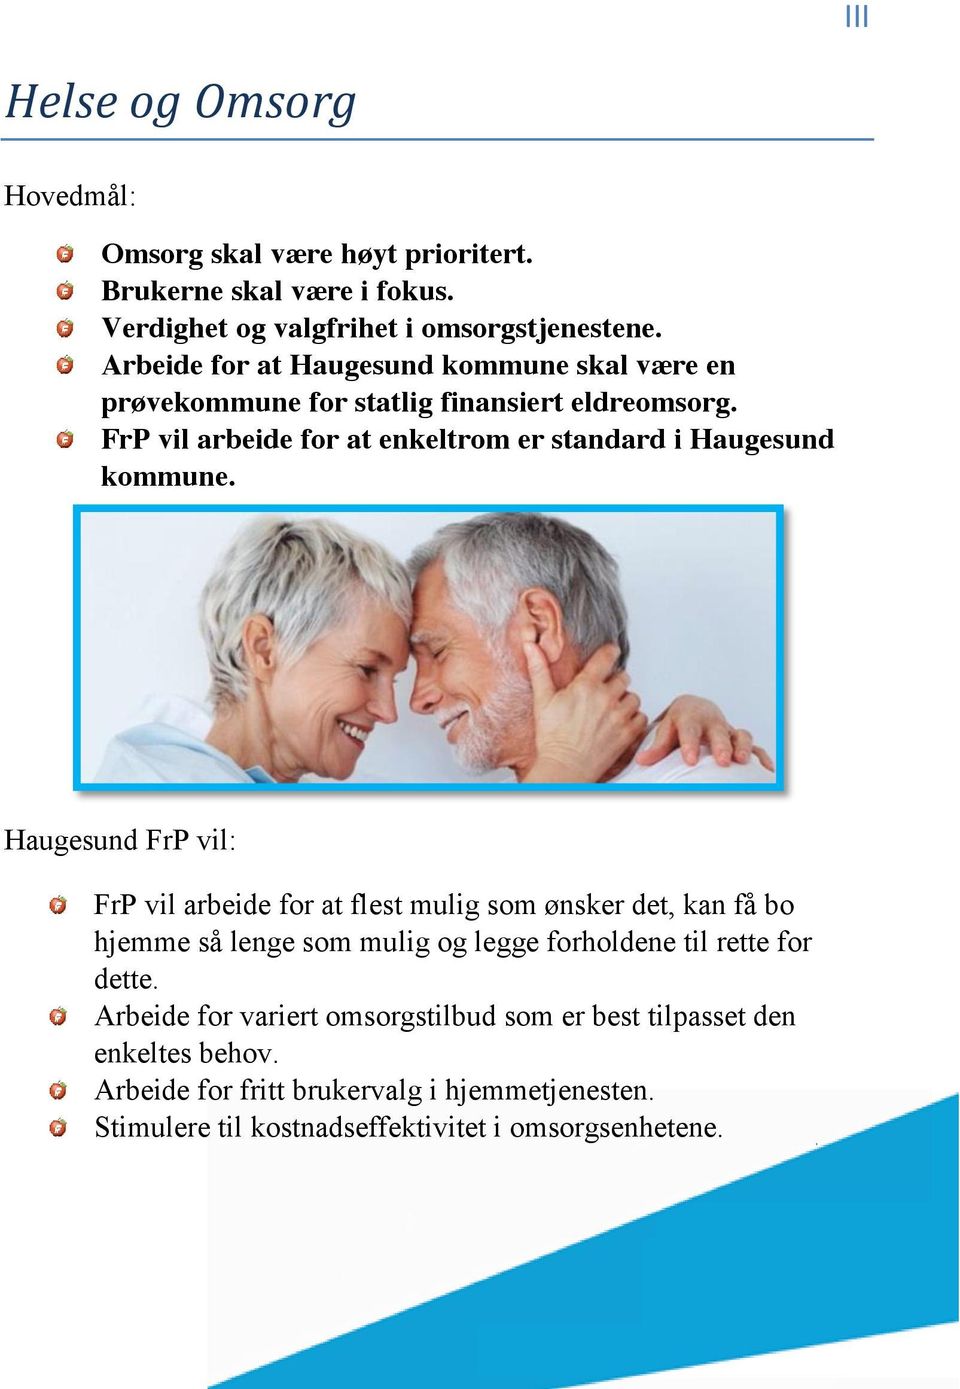 FrP vil arbeide for at enkeltrom er standard i Haugesund kommune.